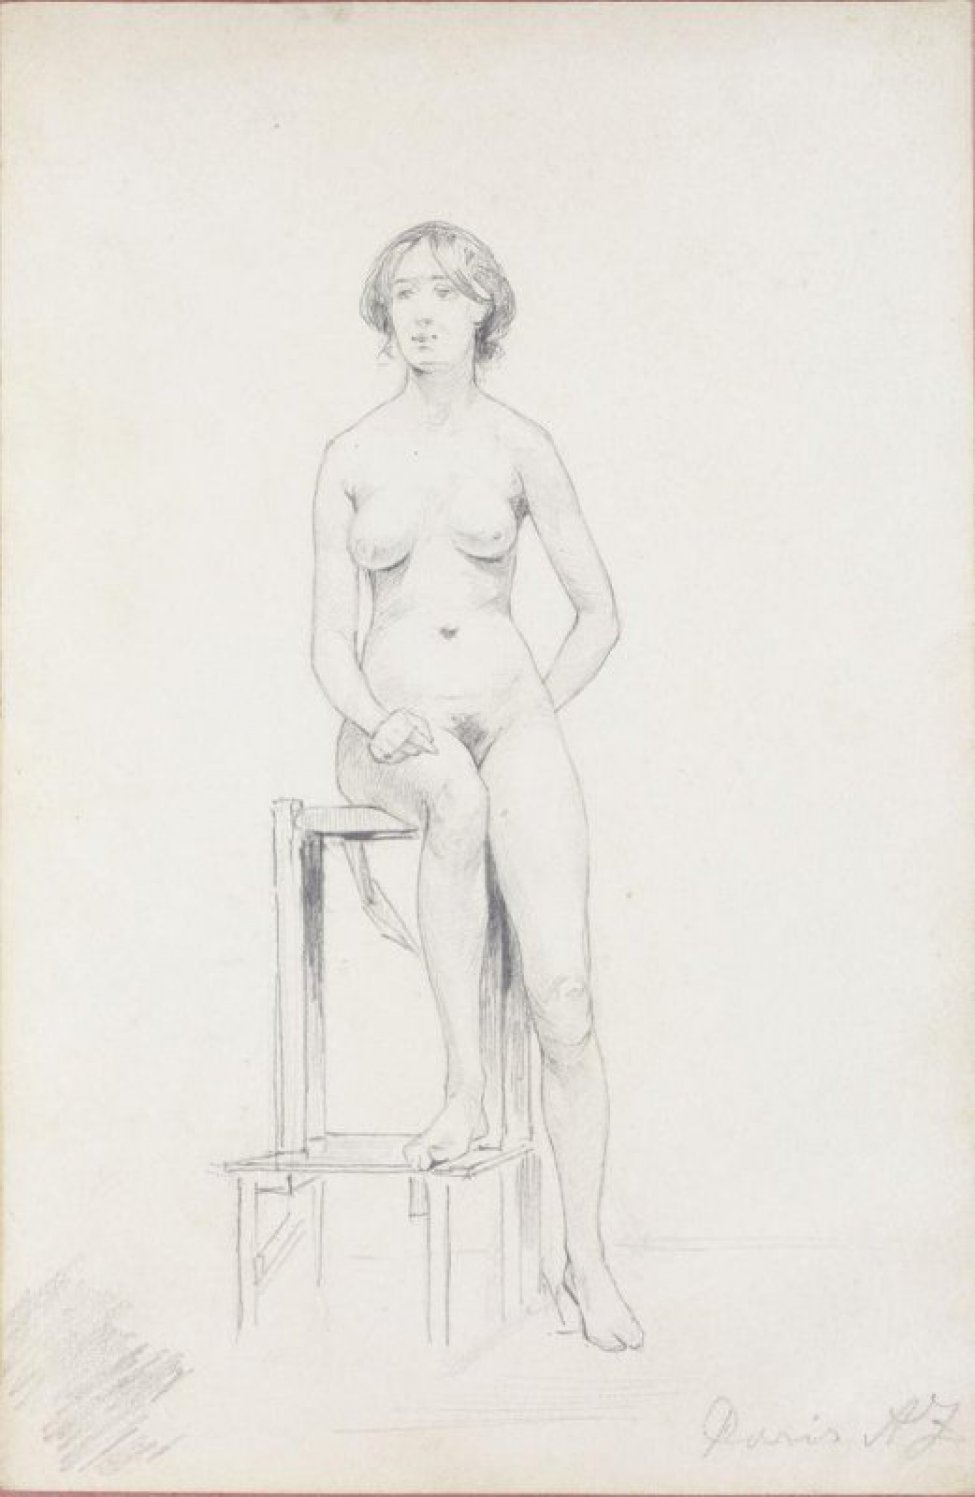 Изображена фигура обнаженной женщины, стоящей на постаменте лицом к зрителю. Правая рука лежит на правом колене, левая заложена за спину. Правая нога опирается на ступеньки, левая стоит на полу.